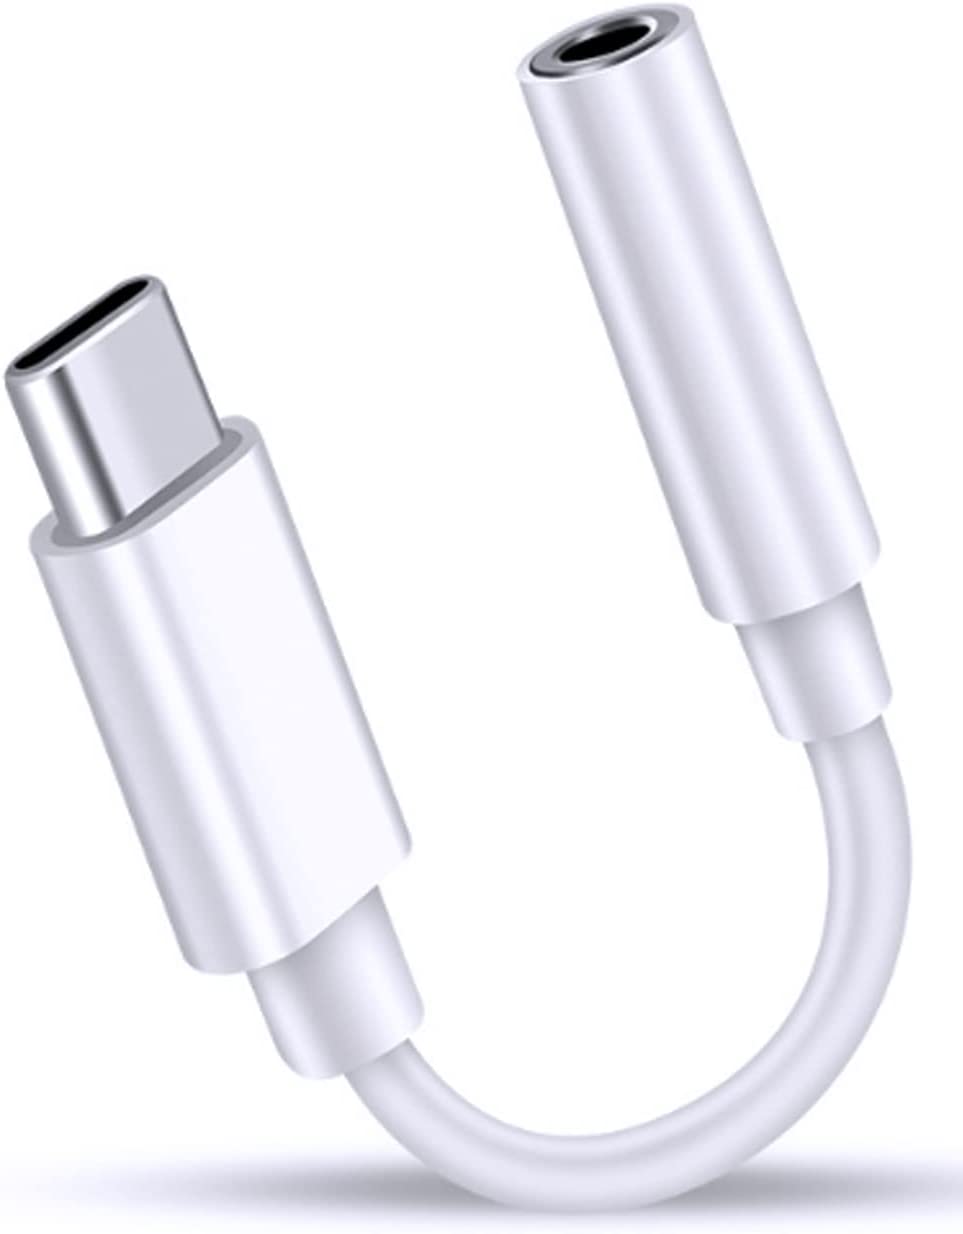 2枚セット　タイプc イヤホンジャック 変換 USB-C to 3.5mm オーディオアダプタ ヘッドフォン変換 通話/音量調節/音楽 ハイレゾ対応 高耐久性 MacBookAir / Pro / iPad Pro / Android / Type-Cデバイス